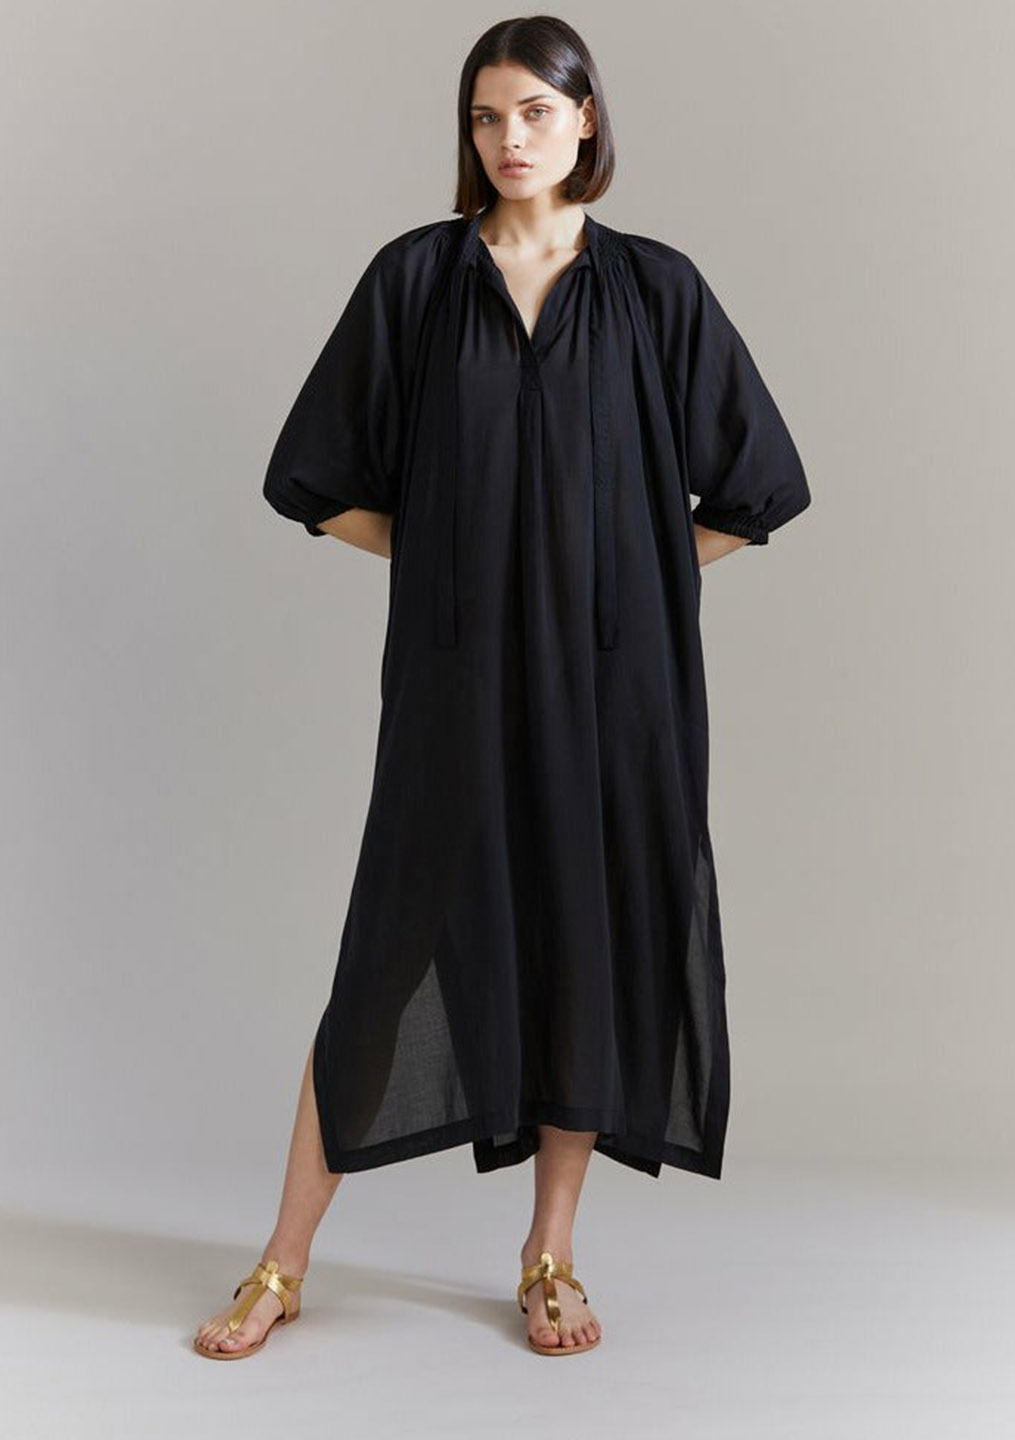 Laing | Celeste Dress - Black - Contain Boutique